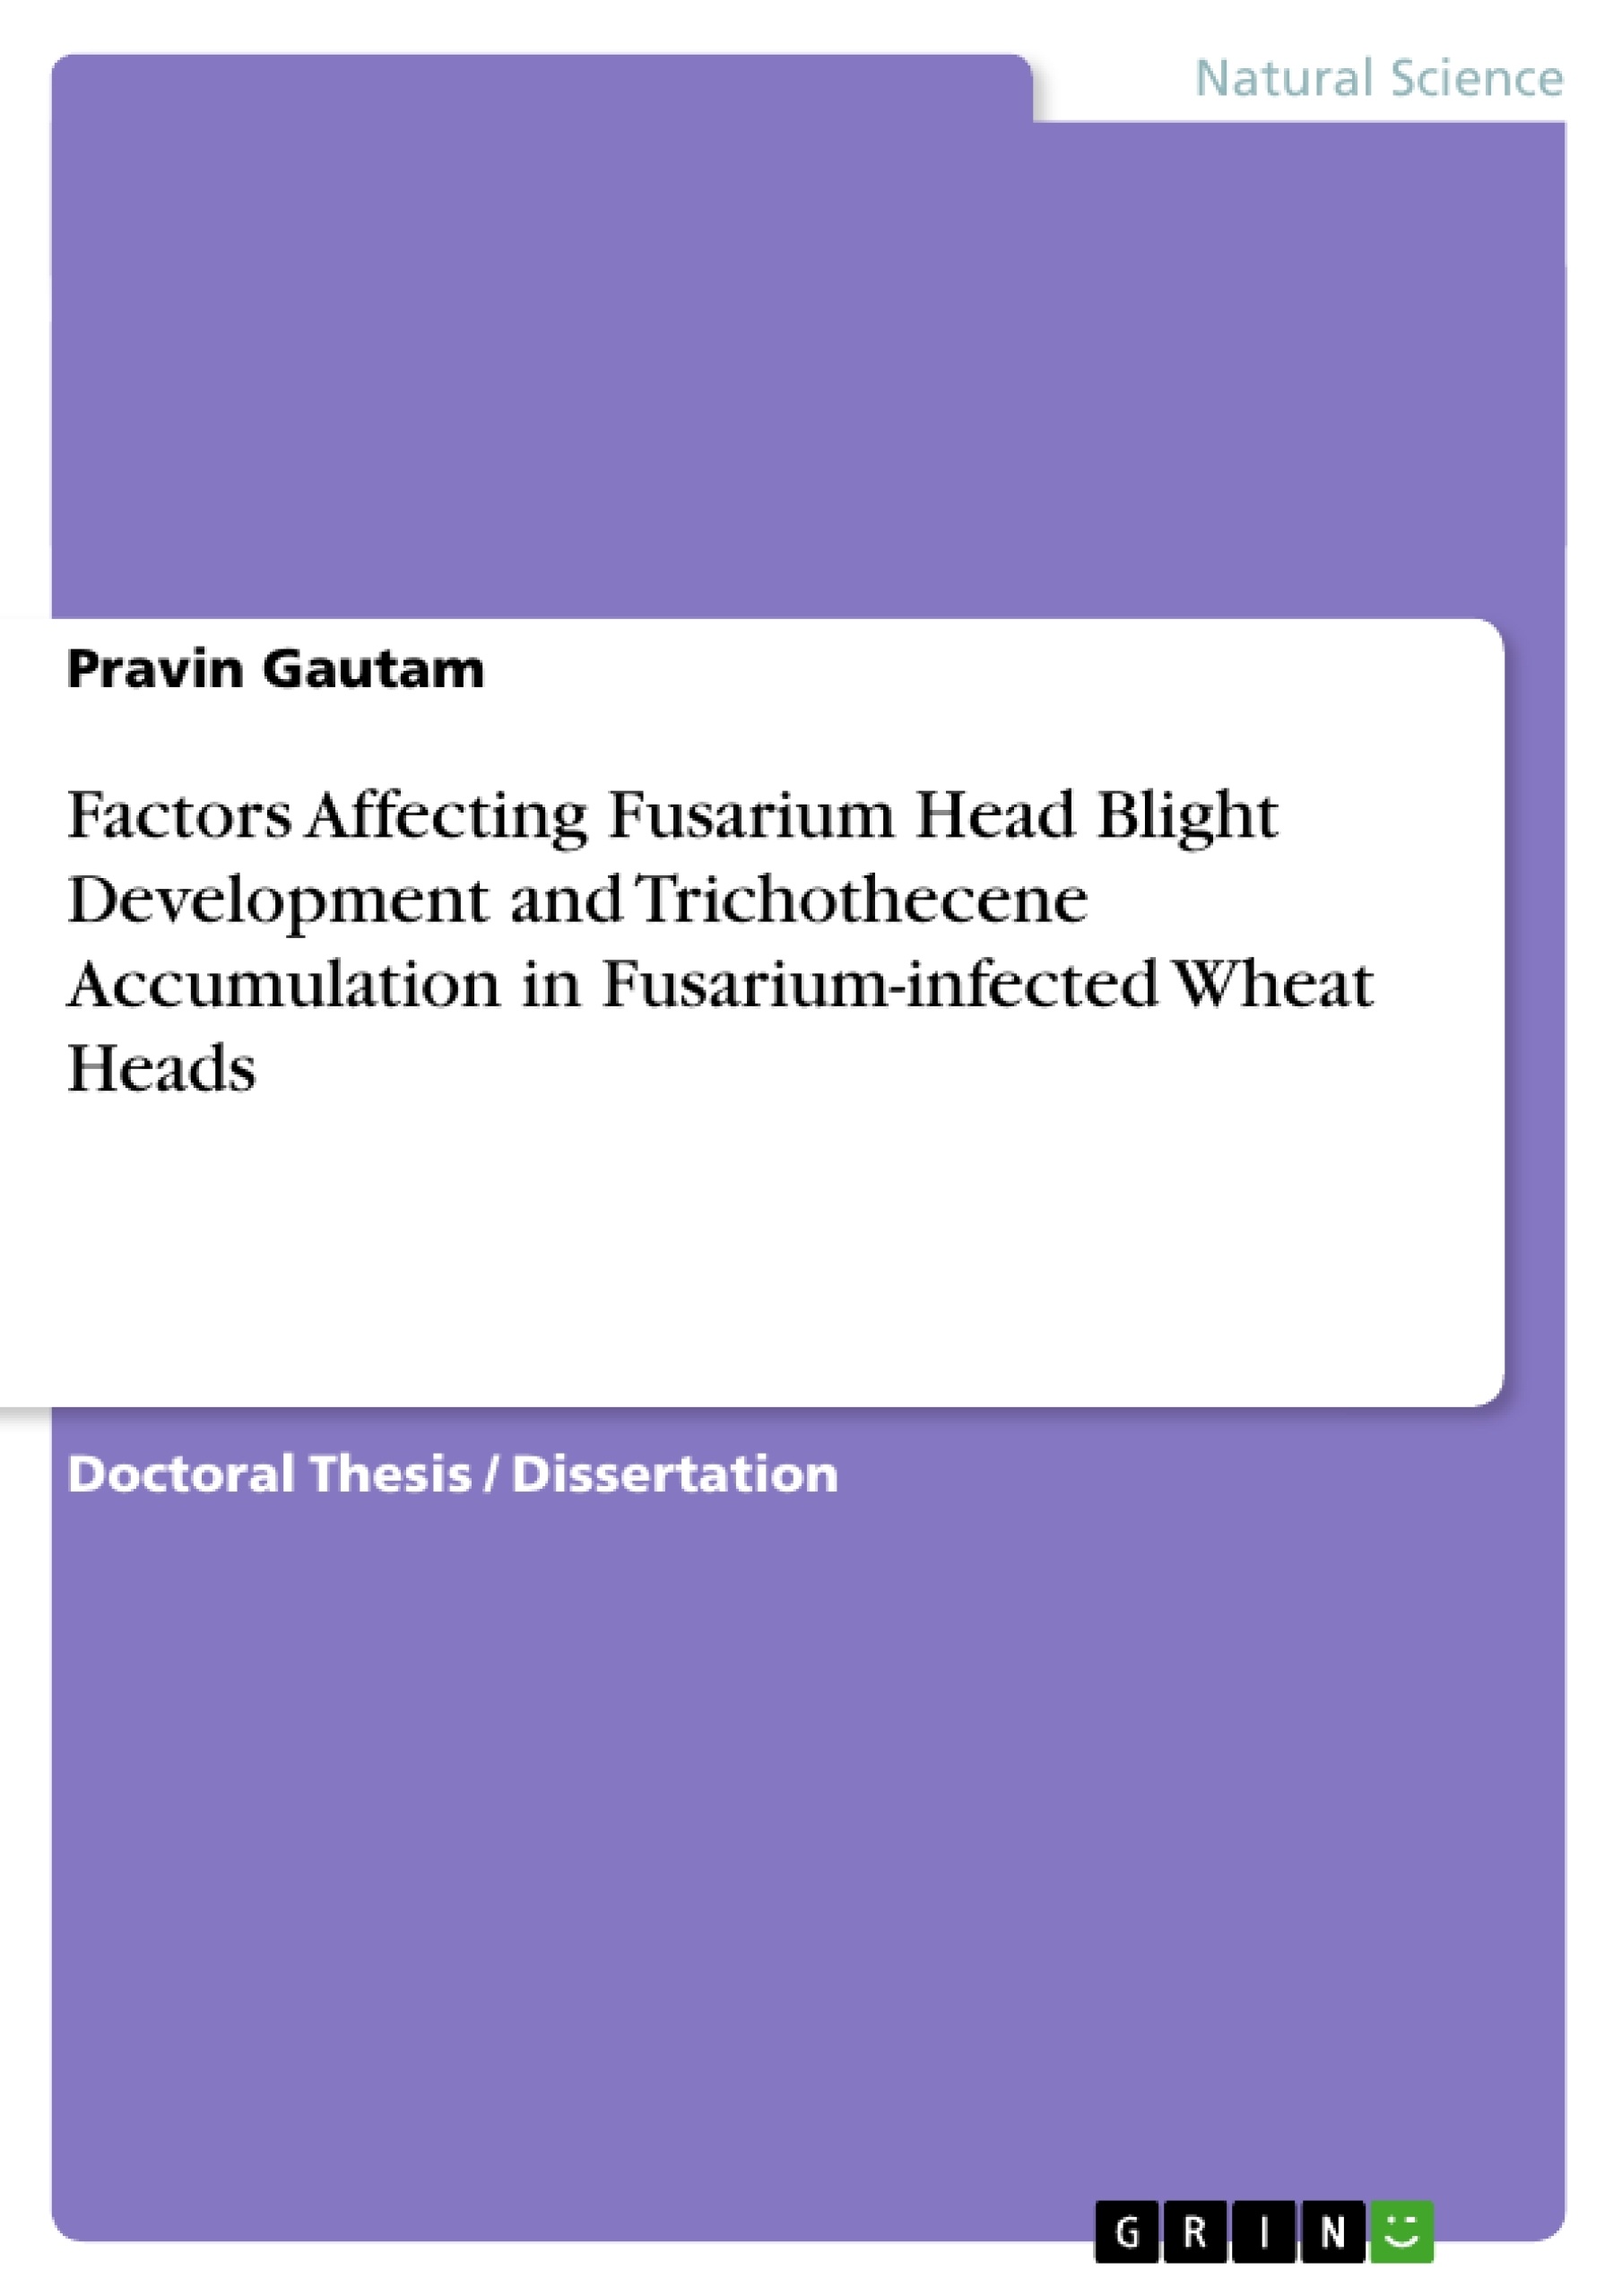 Título: Factors Affecting Fusarium Head Blight Development and Trichothecene Accumulation in Fusarium-infected Wheat Heads